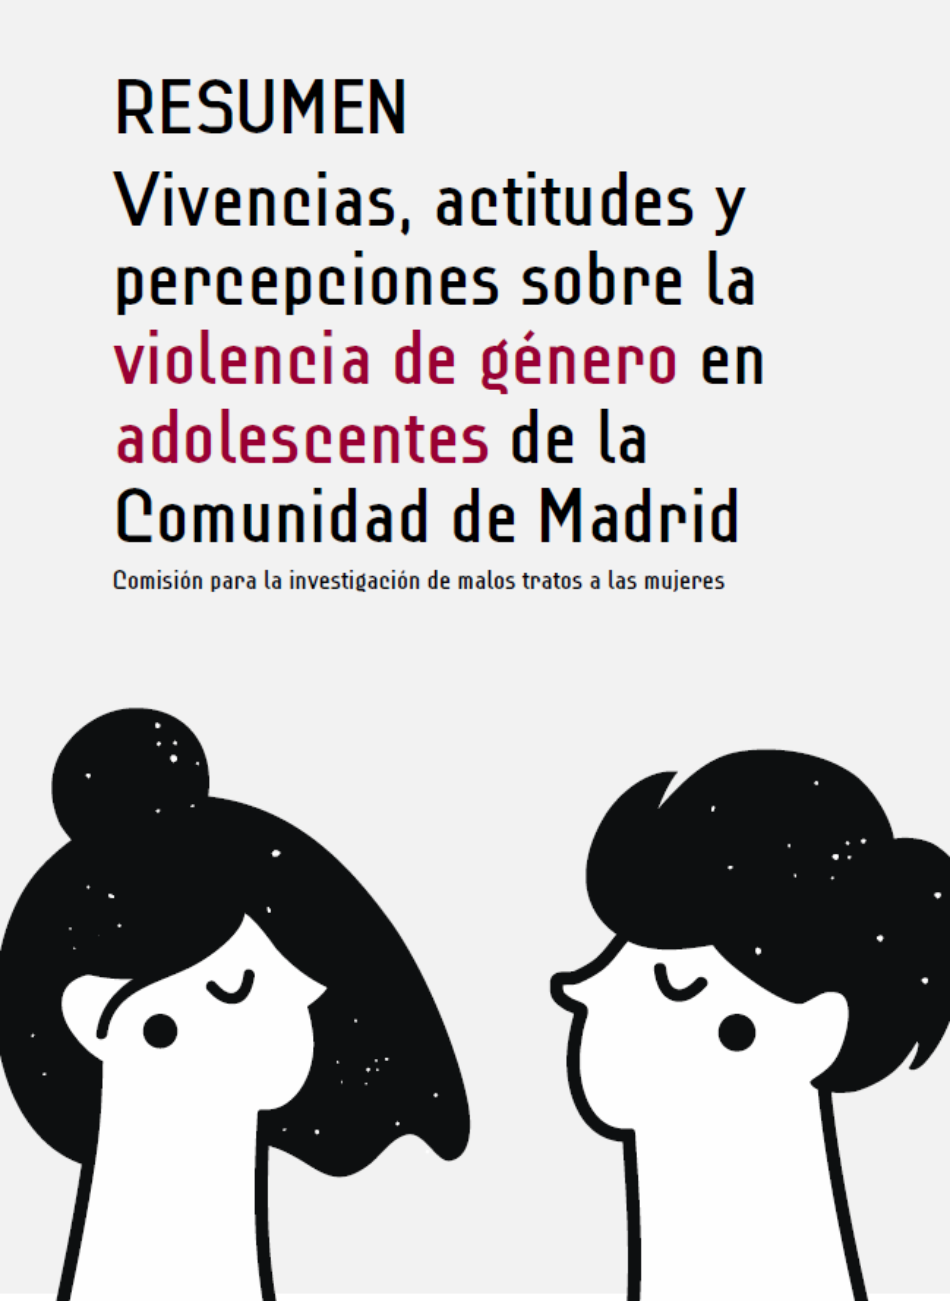 El 69% de adolescentes de la Comunidad de Madrid cree que la violencia de género la sufren mujeres y hombres indistintamente